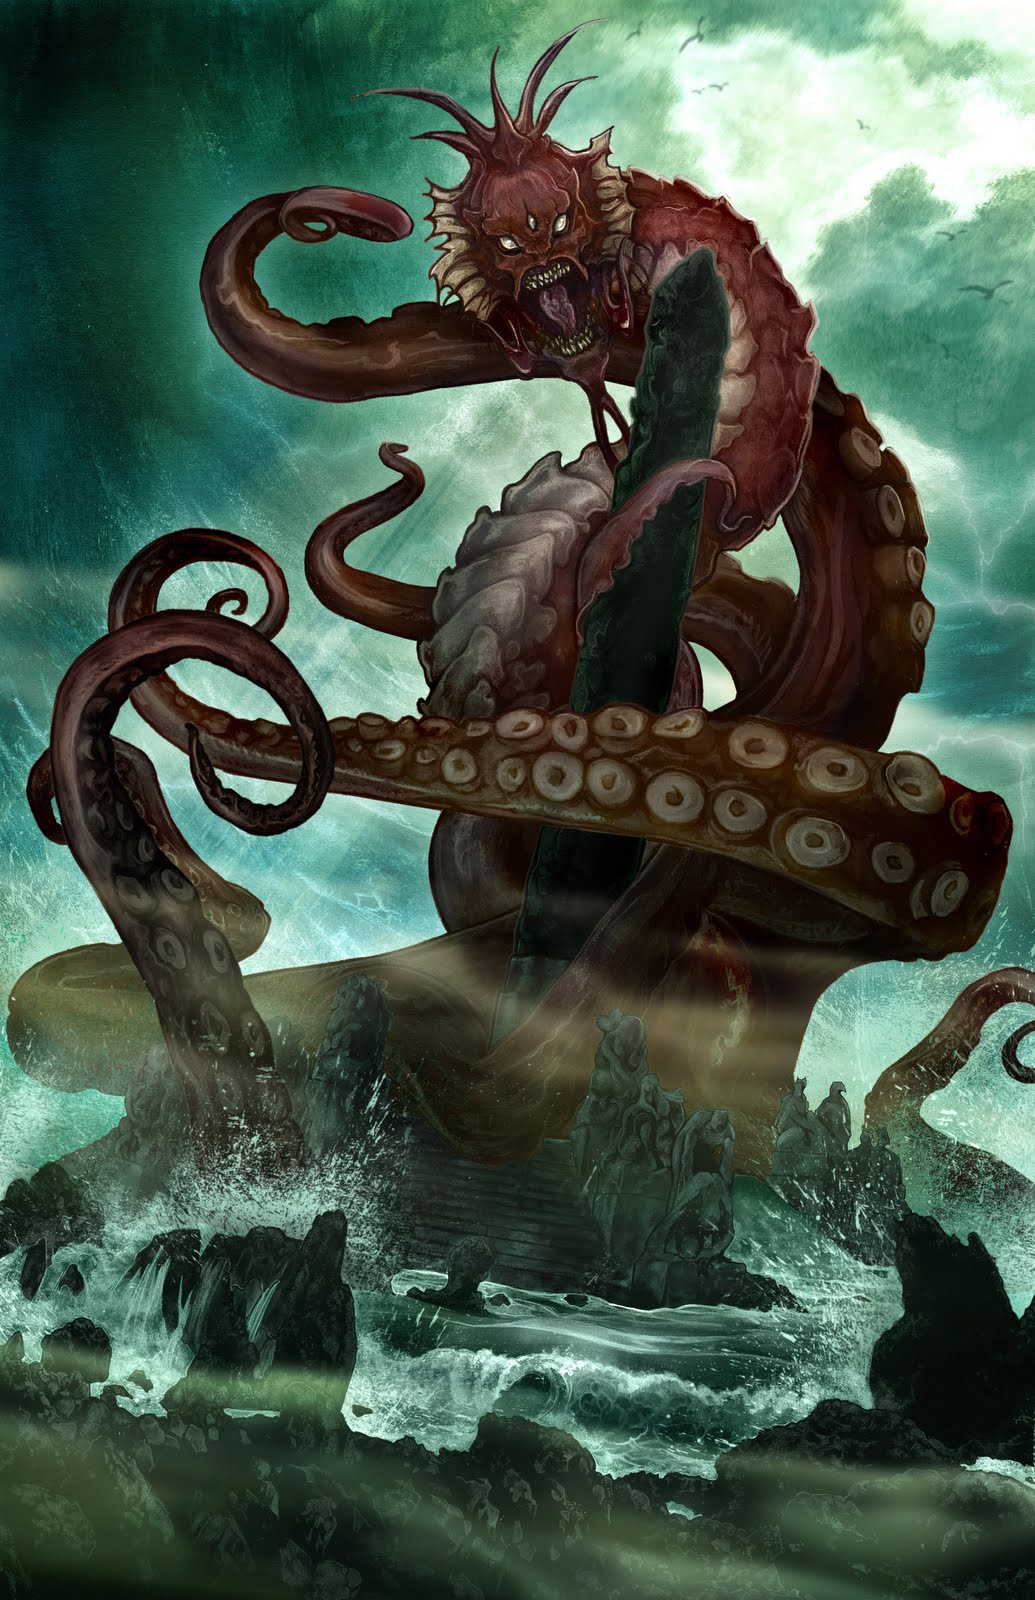 The Shore é um jogo de terror inspirado nos livros de Lovecraft